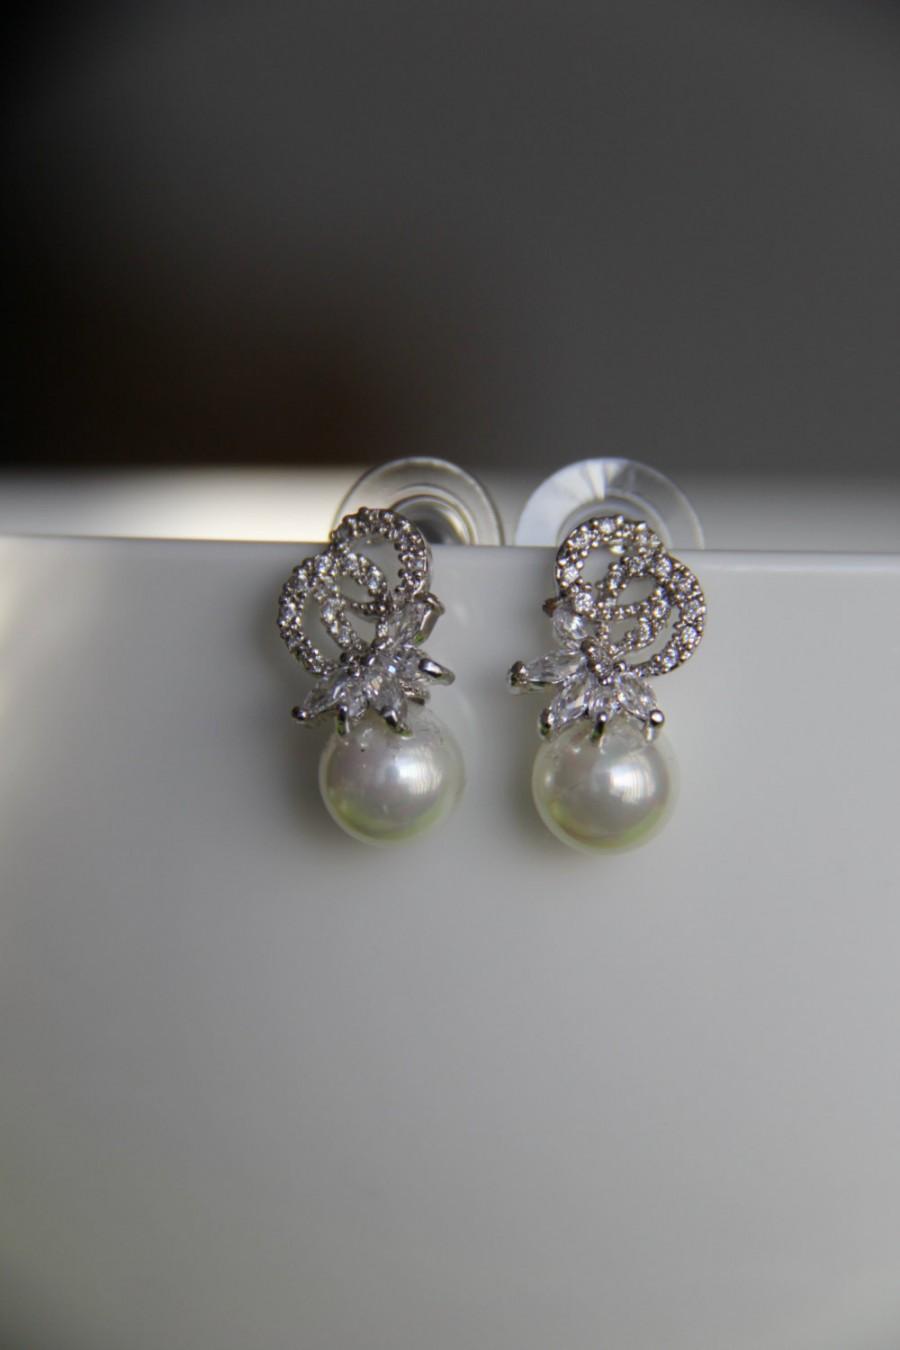 Hochzeit - Bridal earrings, cz earrings, wedding earrings, bridesmaid earrings, bridal jewelry, wedding jewelry, cz jewelry, dangley earrings